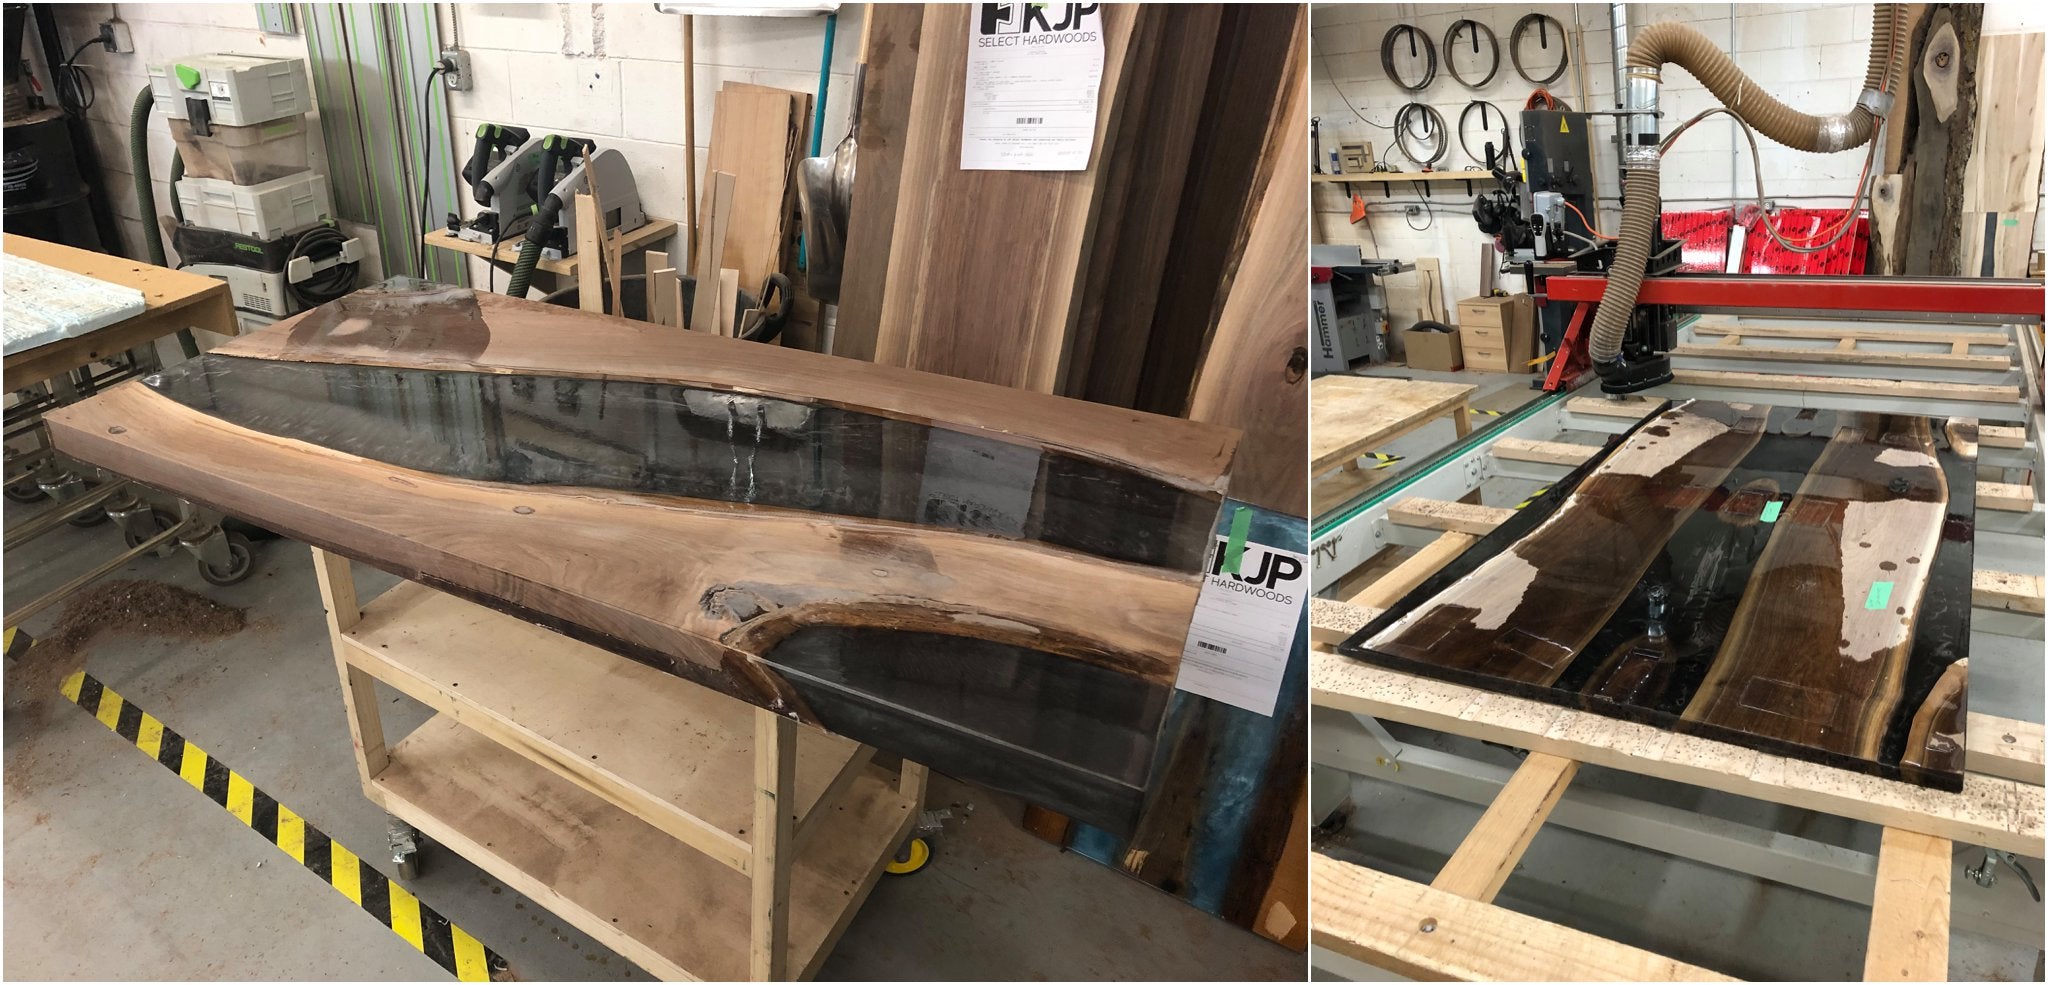 flatten river table in Ottawa at KJP Select Hardwoods